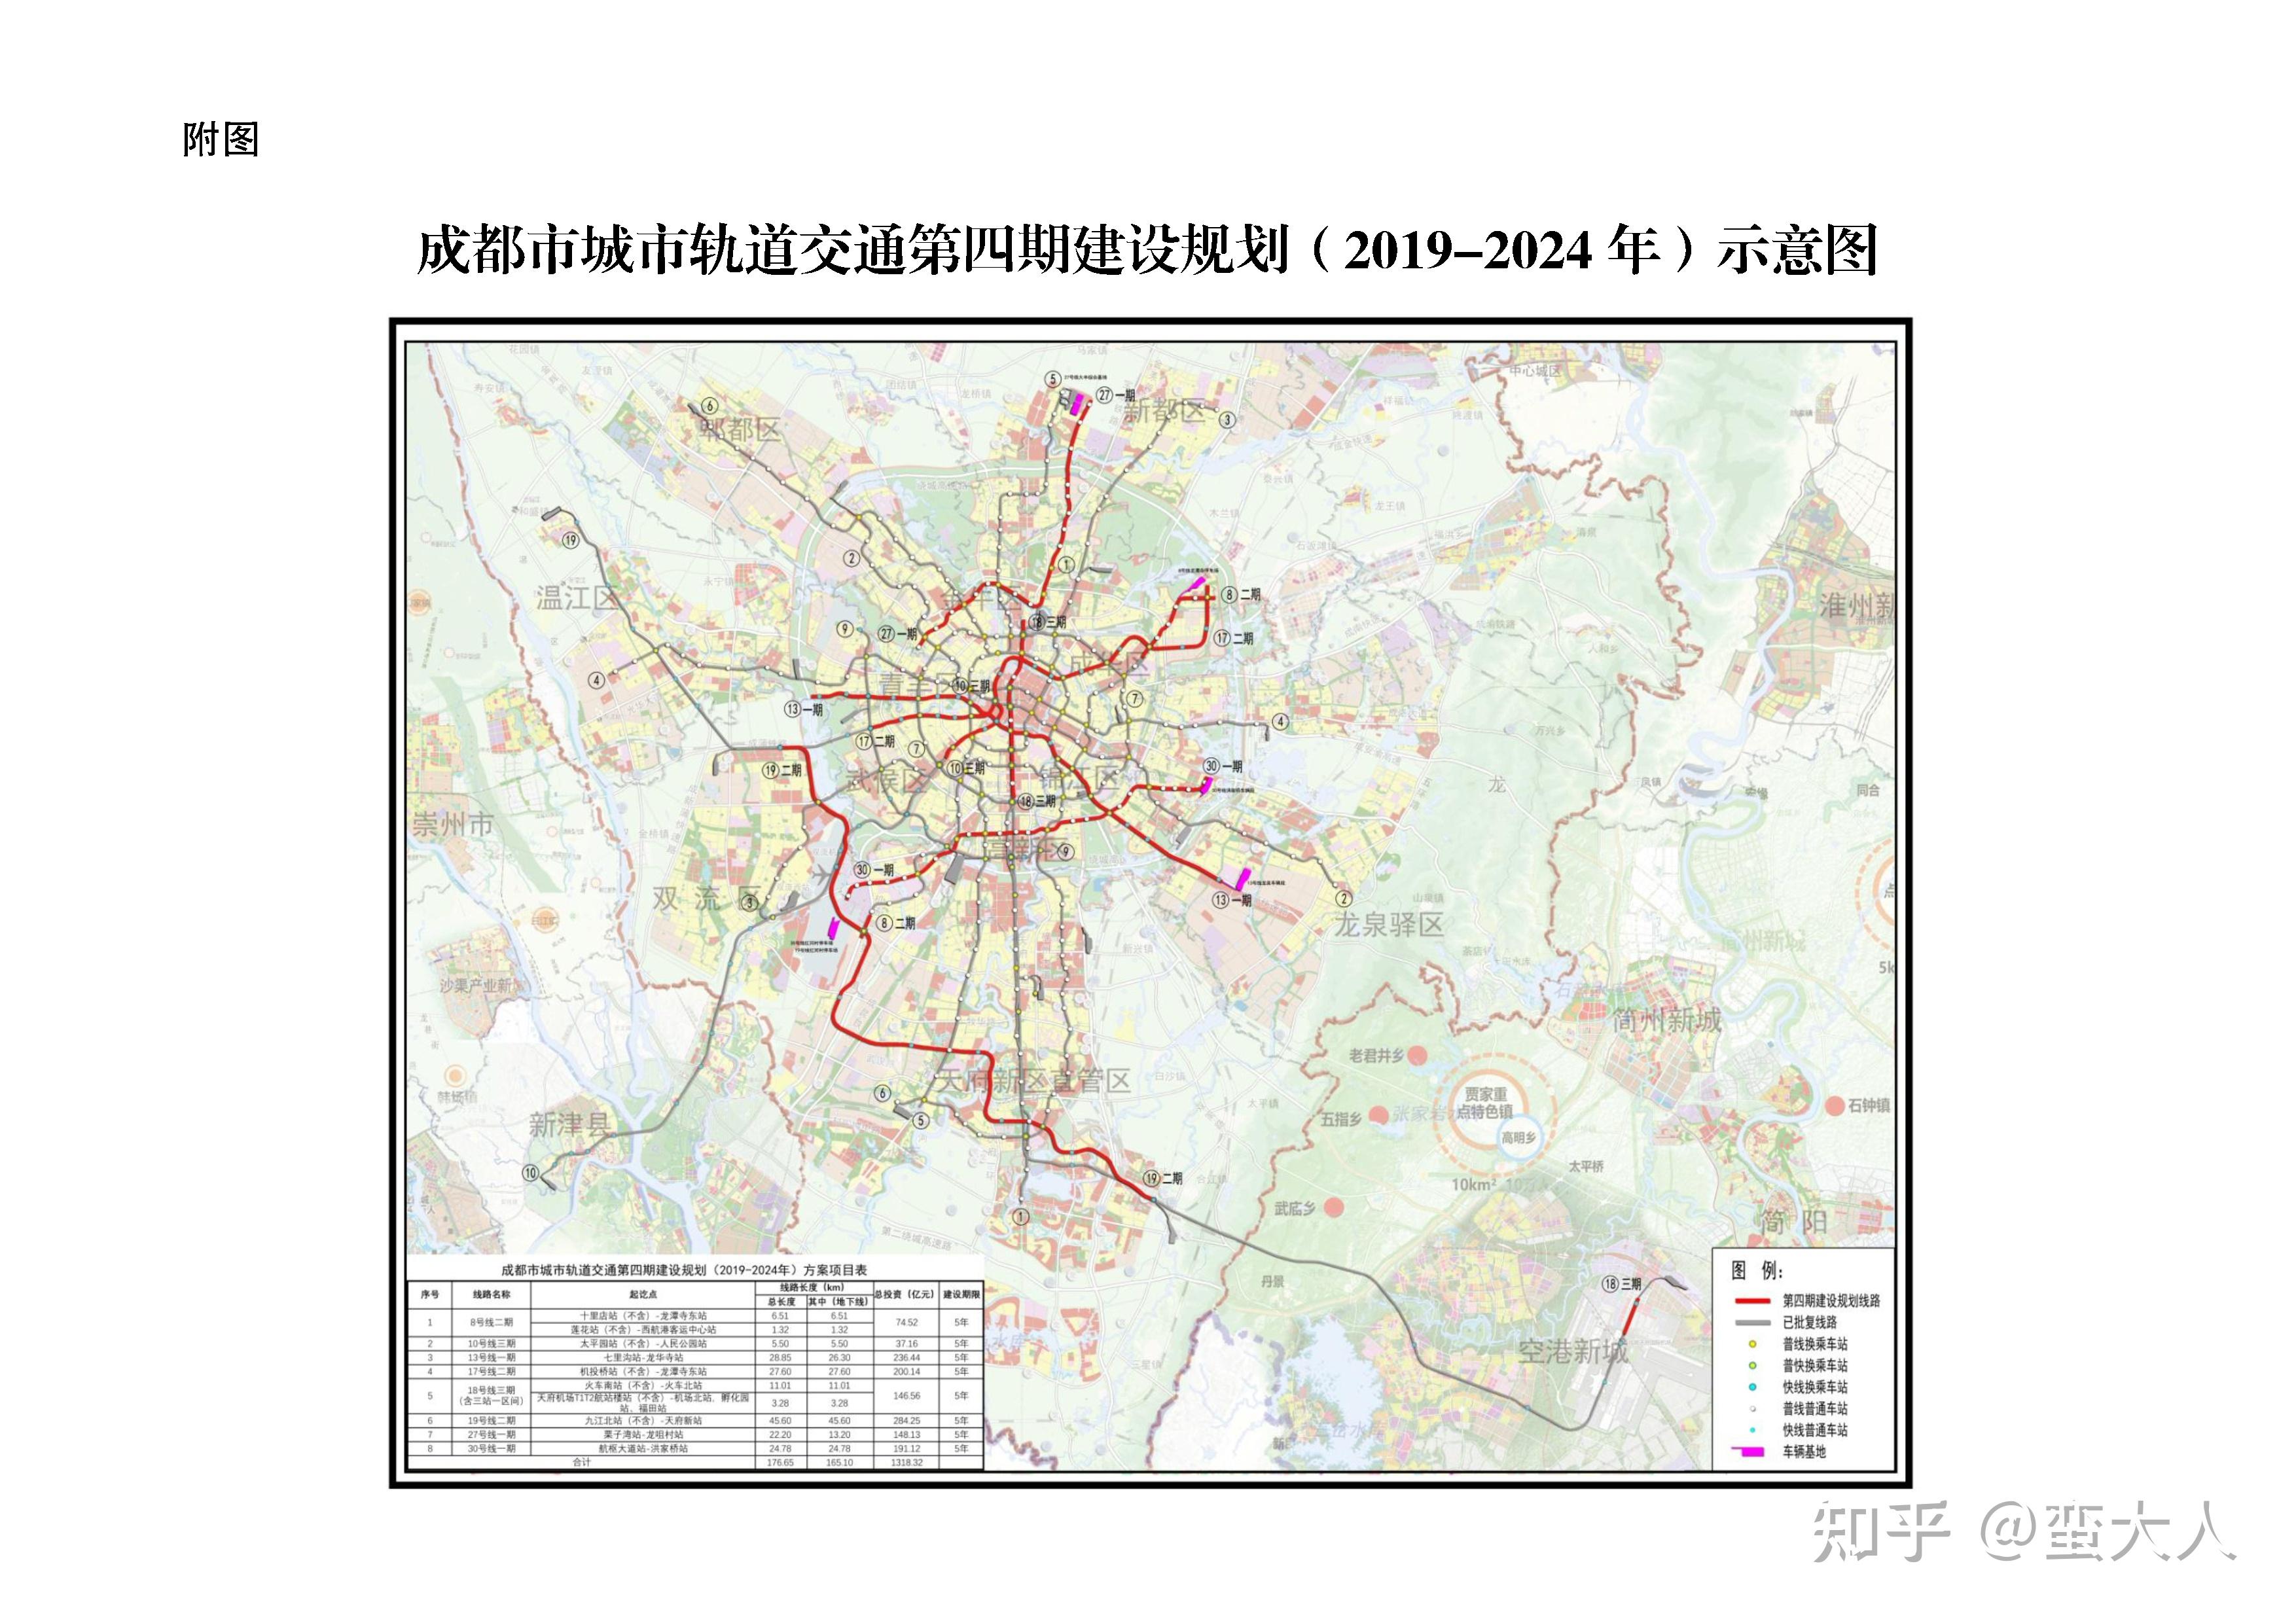 成都市城市轨道交通第四期建设规划(2019